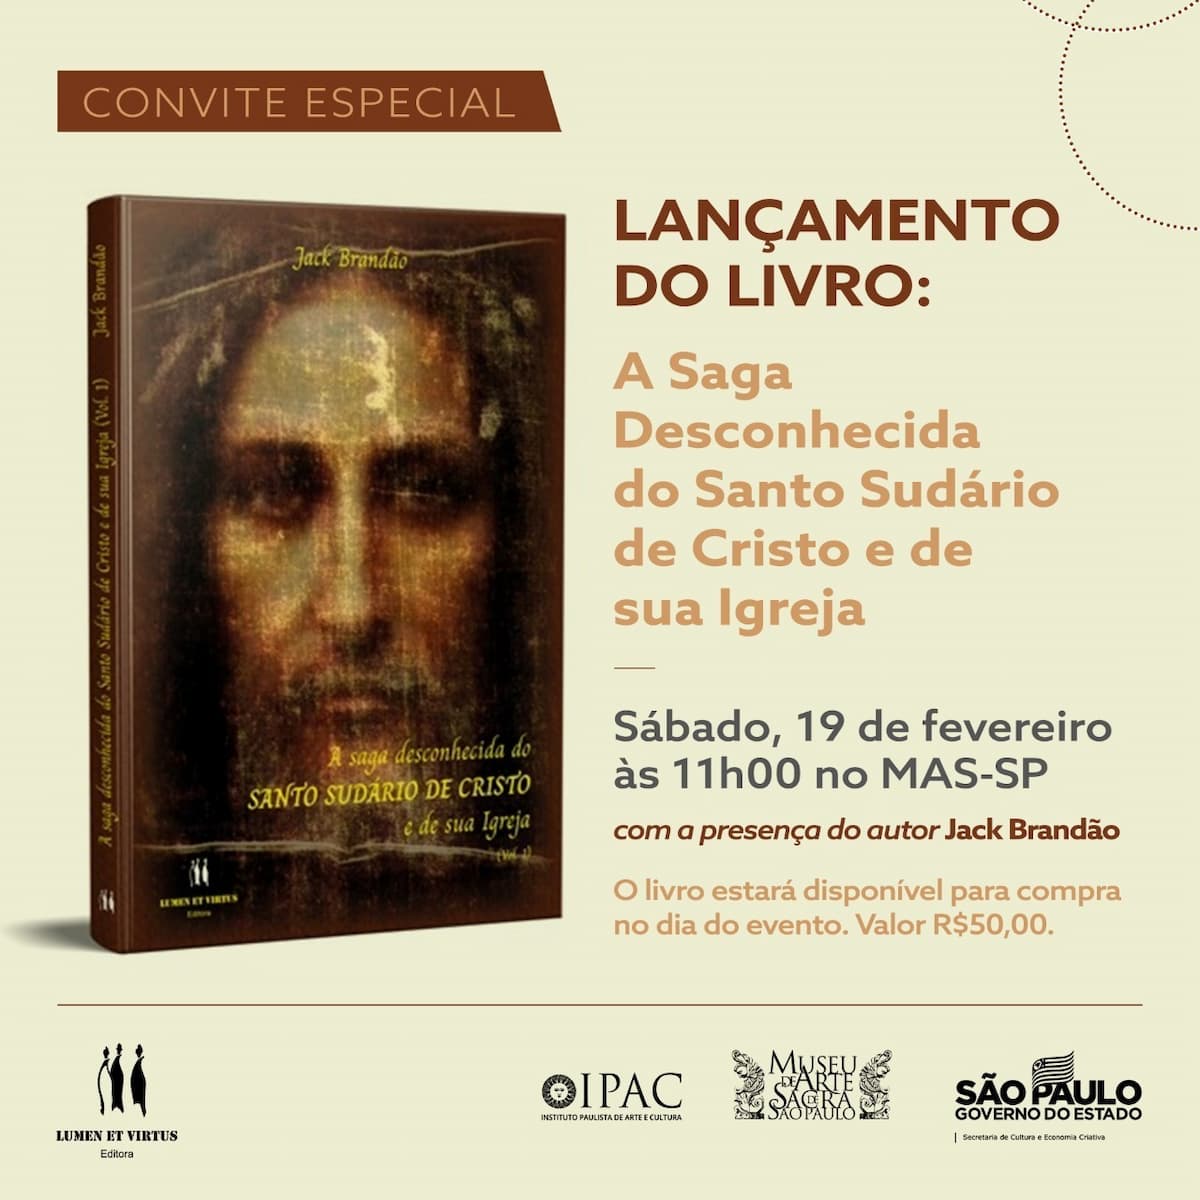 Livro "A saga desconhecida do SUDÁRIO DE CRISTO e de sua Igreja", libro - cubierta, invitación. Divulgación.